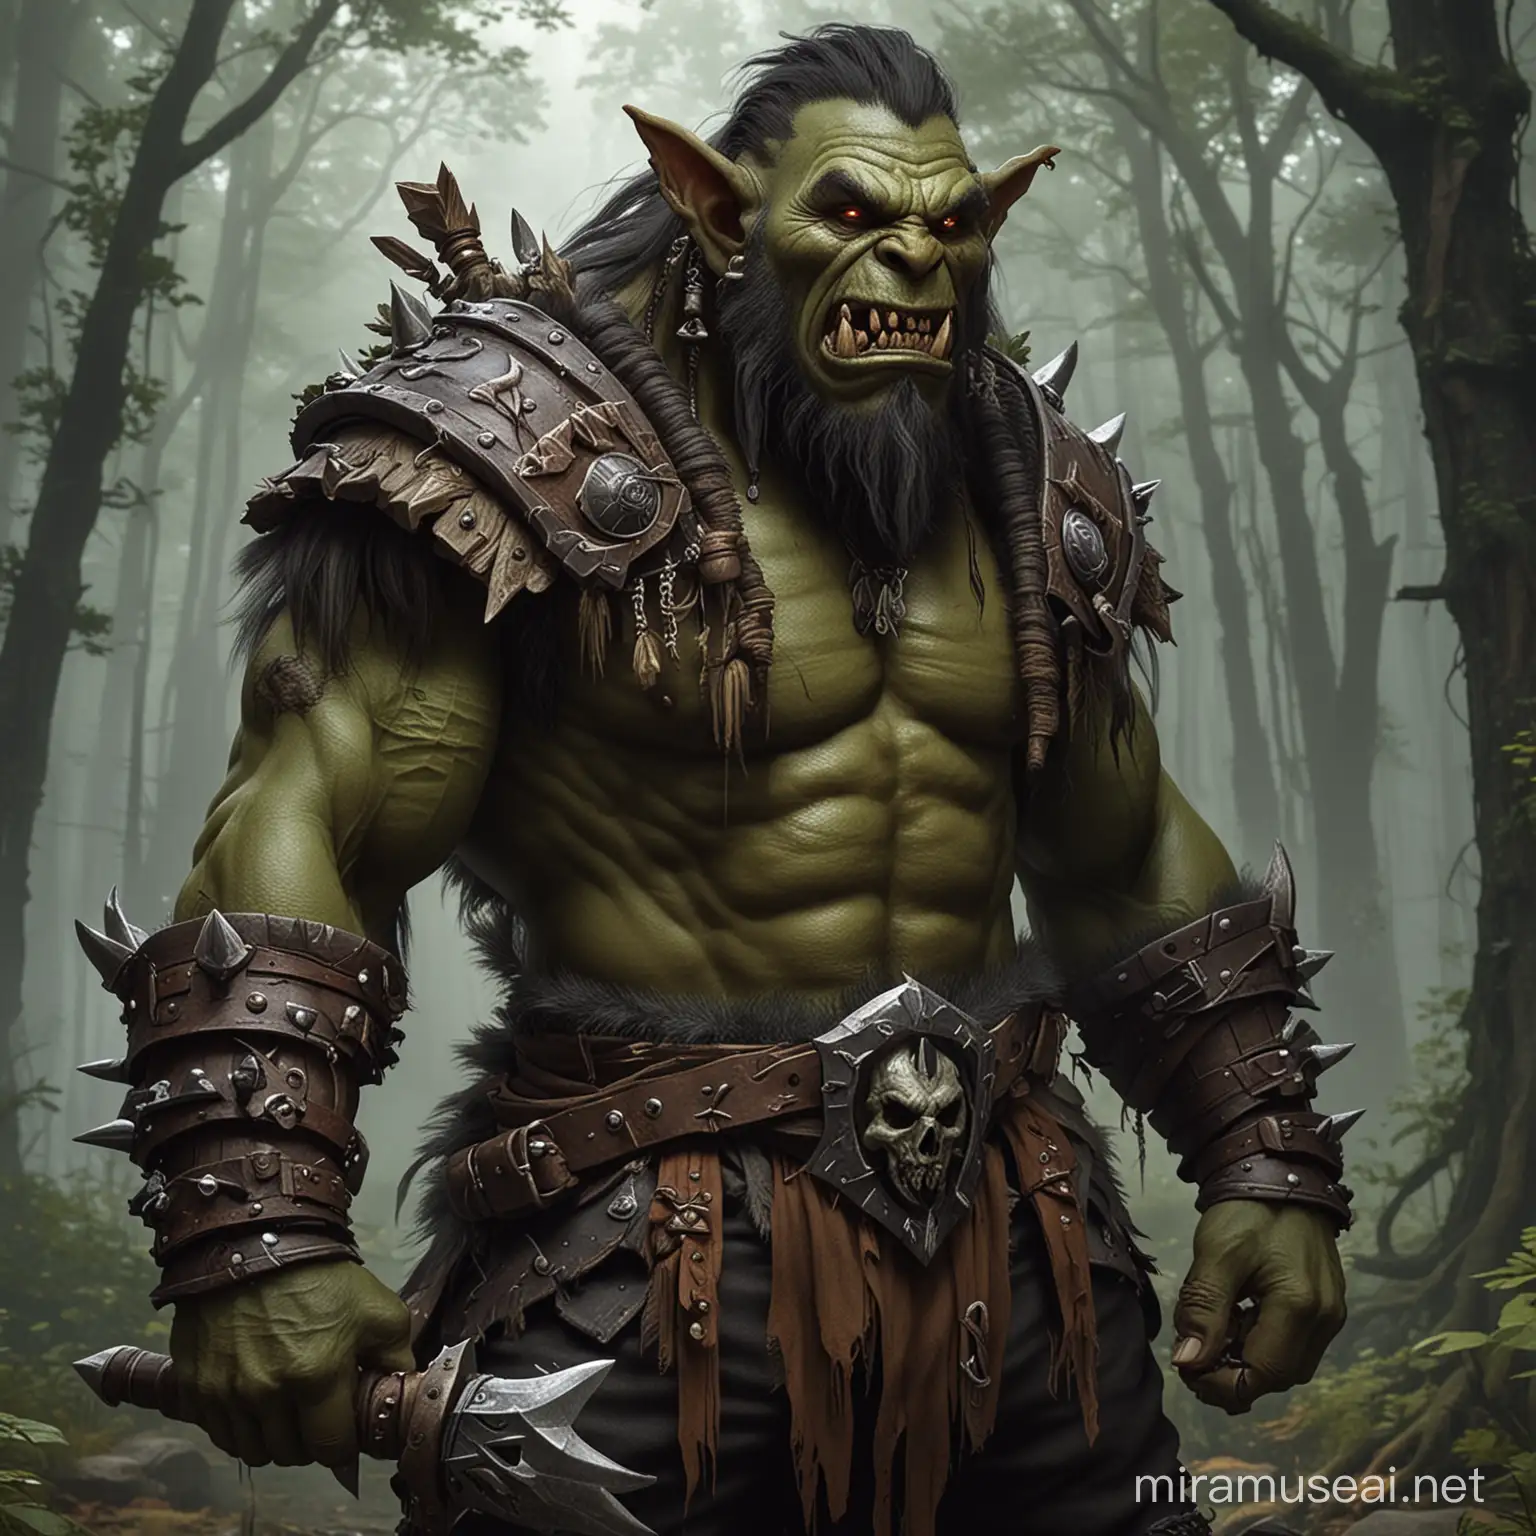 Create me an Male Ork as a Druid in a fantasy world